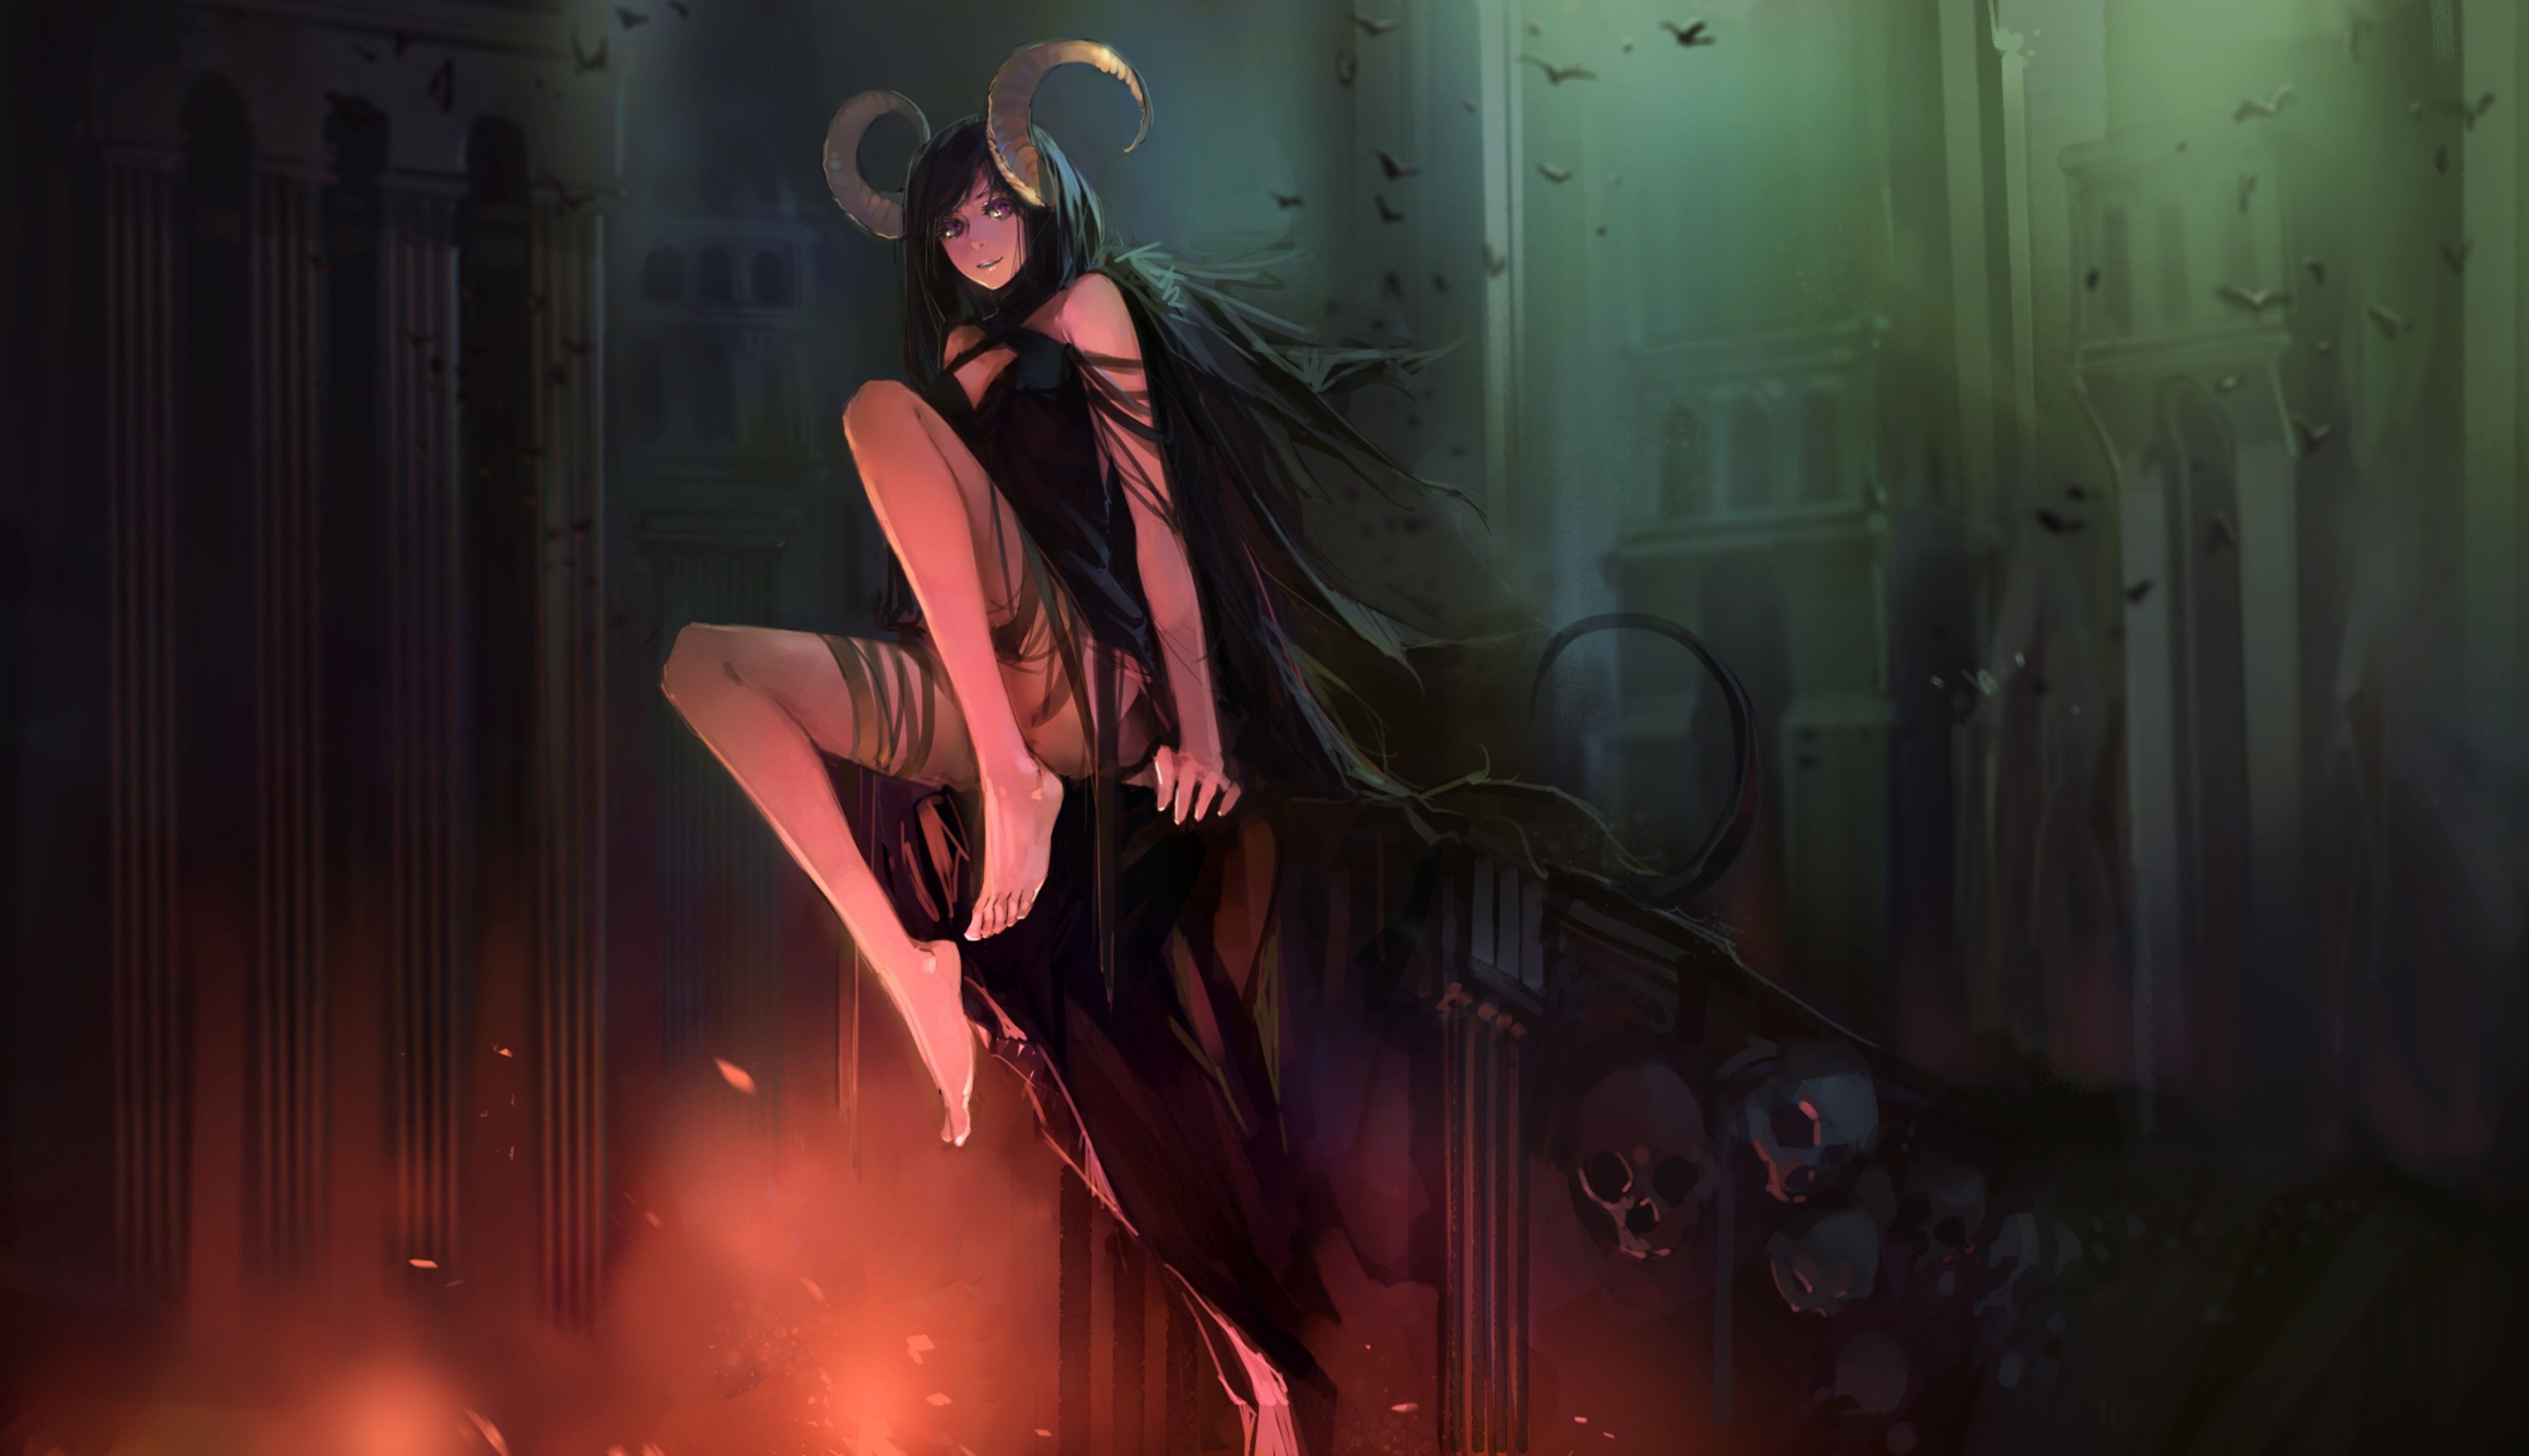 Wallpaper Girl, Anime, Horns, Art, monster hunter for mobile and desktop,  section сёнэн, resolution 1920x1080 - download